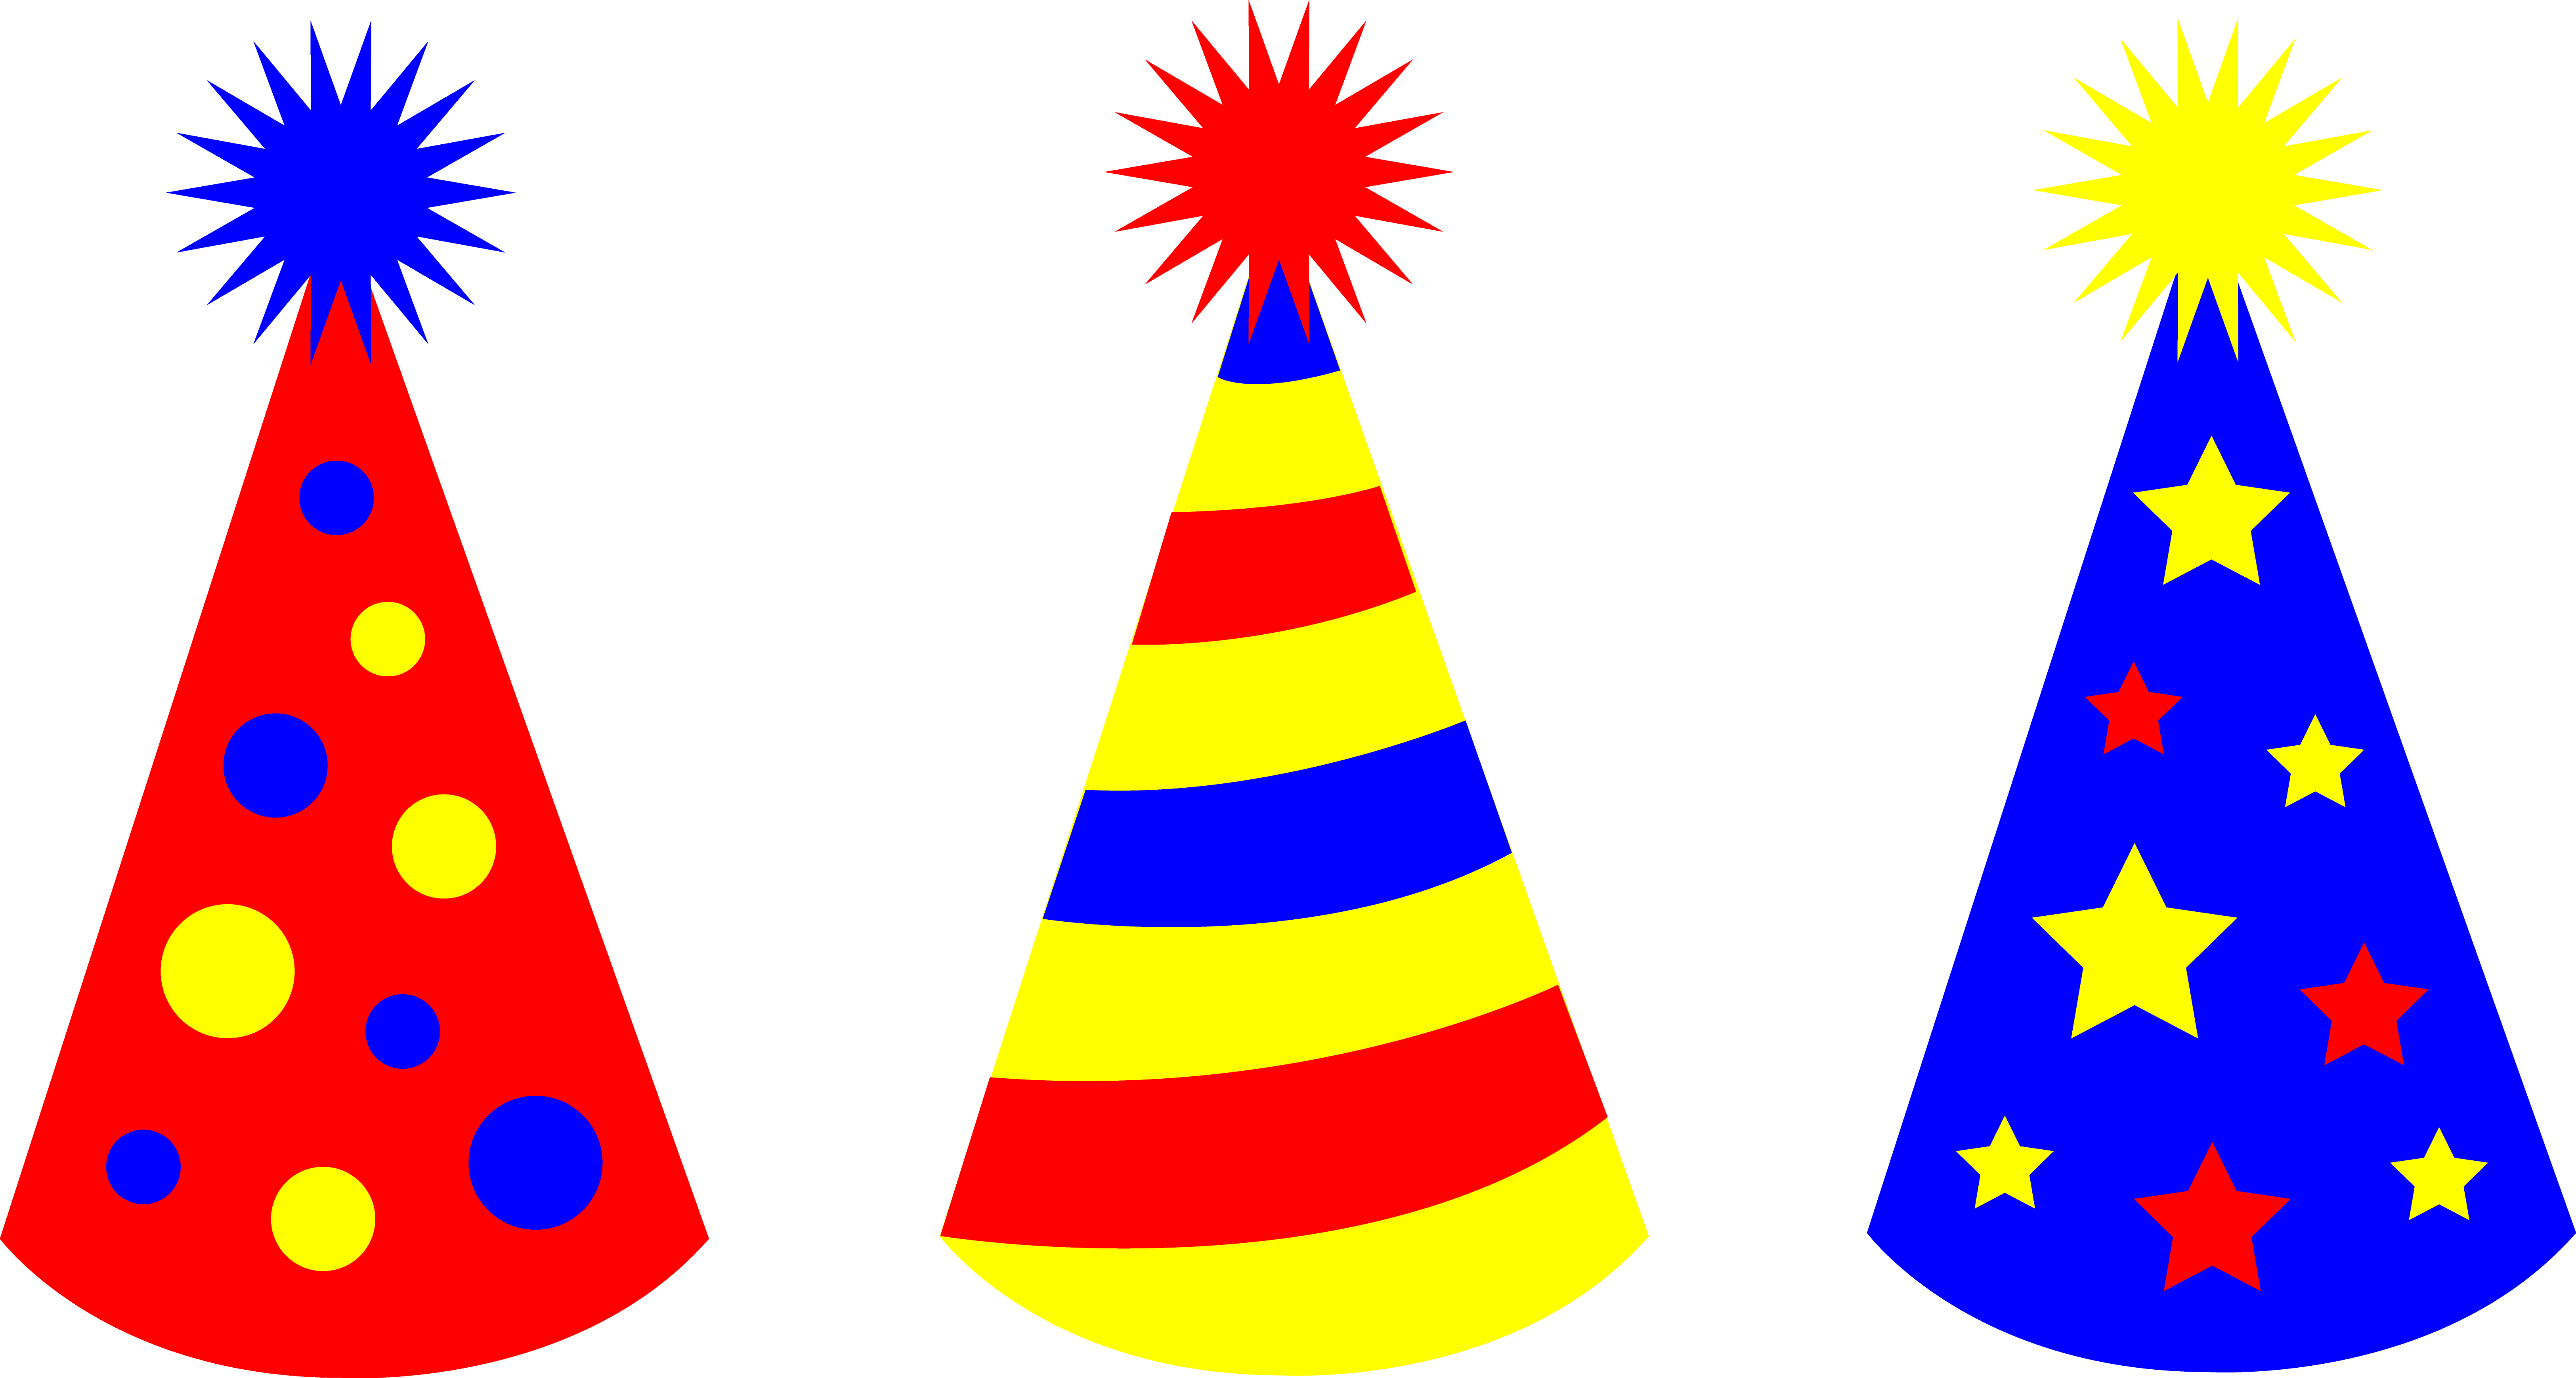 पार्टी जन्मदिन टोपी